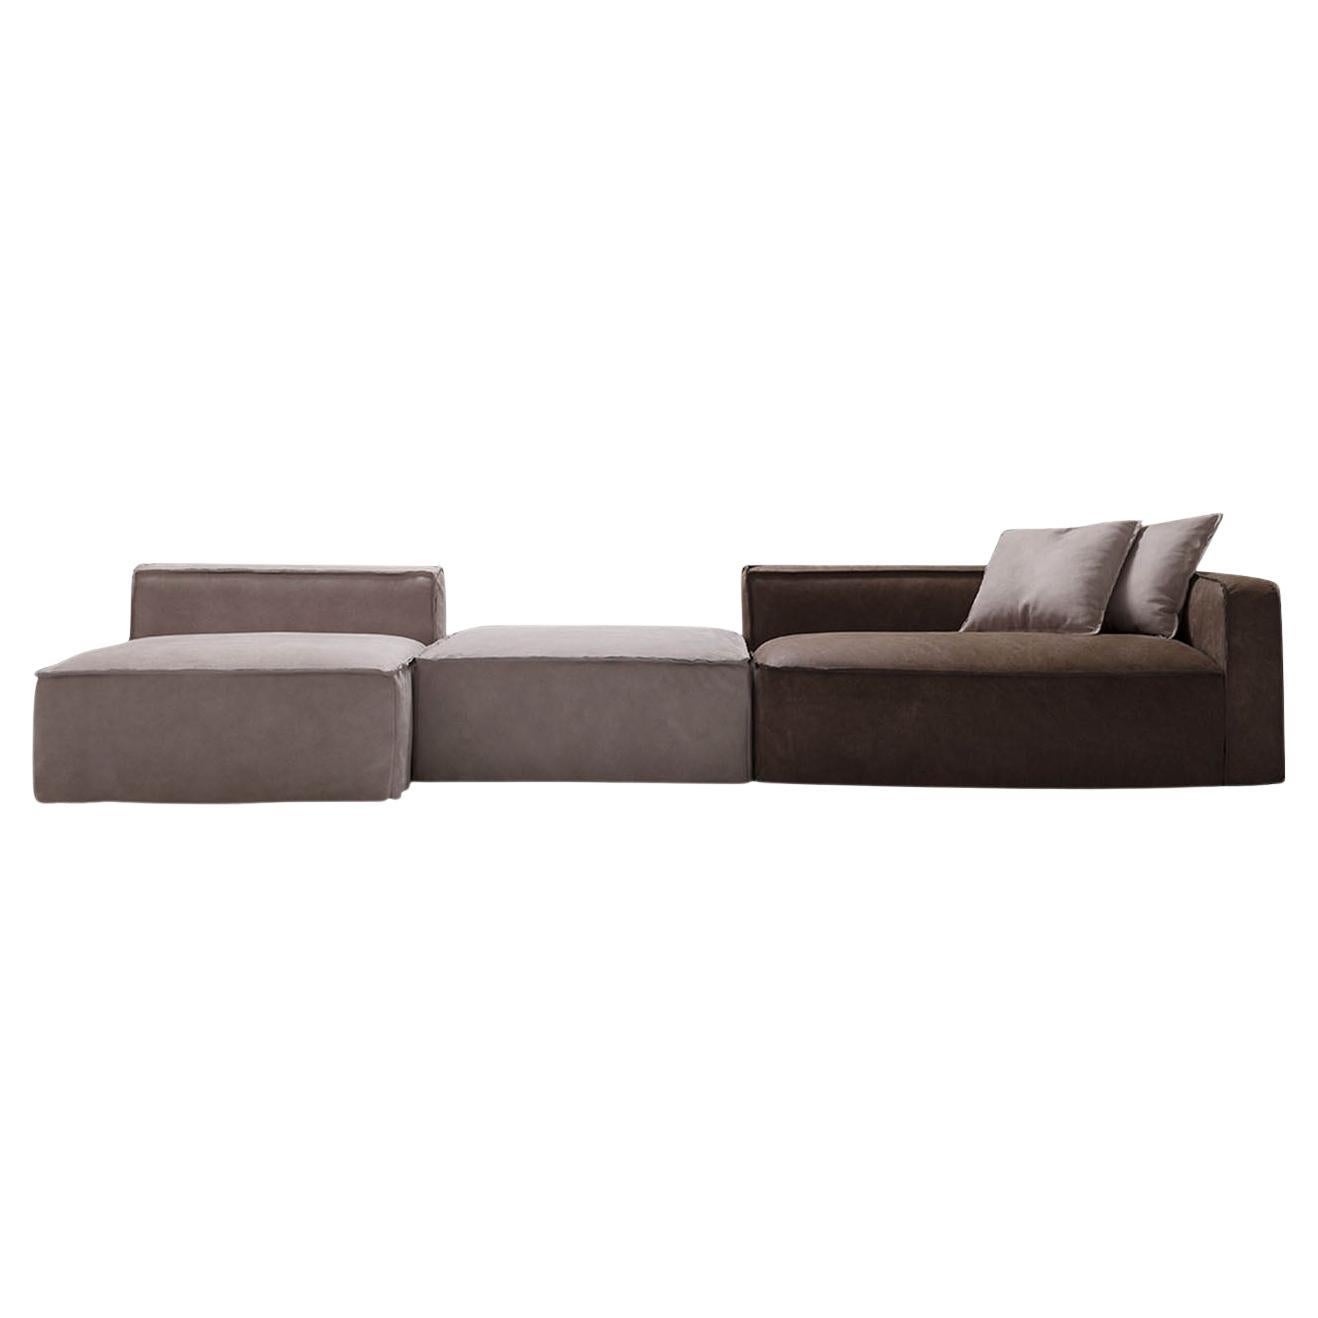 Softly Brown and Sand Modular Sofa For Sale